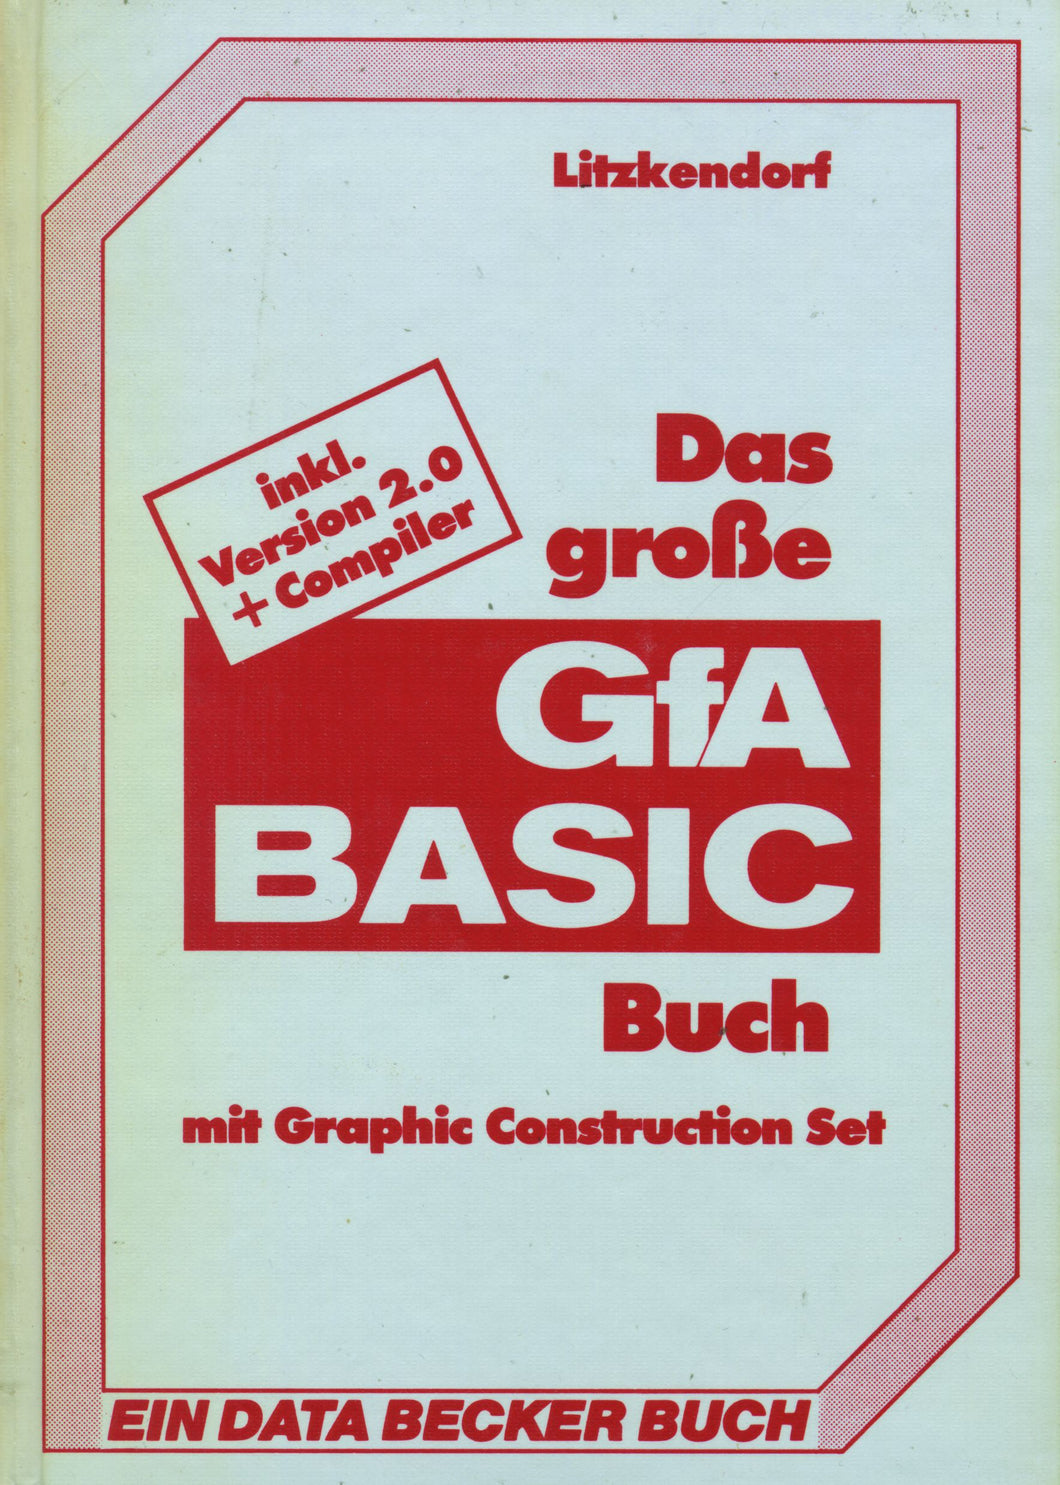 Das grosse GfA BASIC Buch